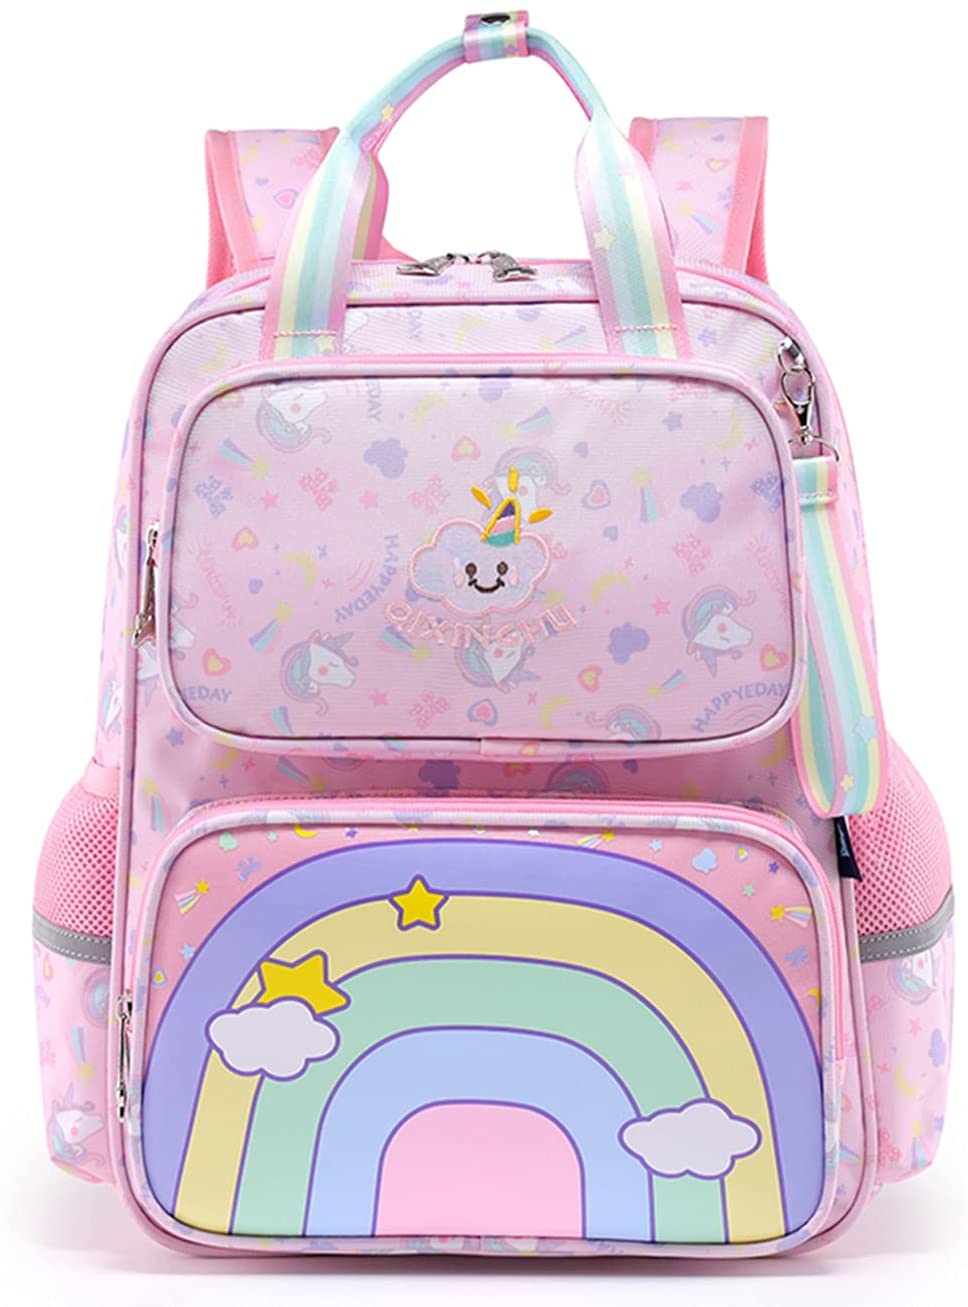 Kids Backpack Girls School Bag Cute Rainbow Preschool Bookbags Toddler Bag  School Outdoor Travel Casual Daypack (Pink)